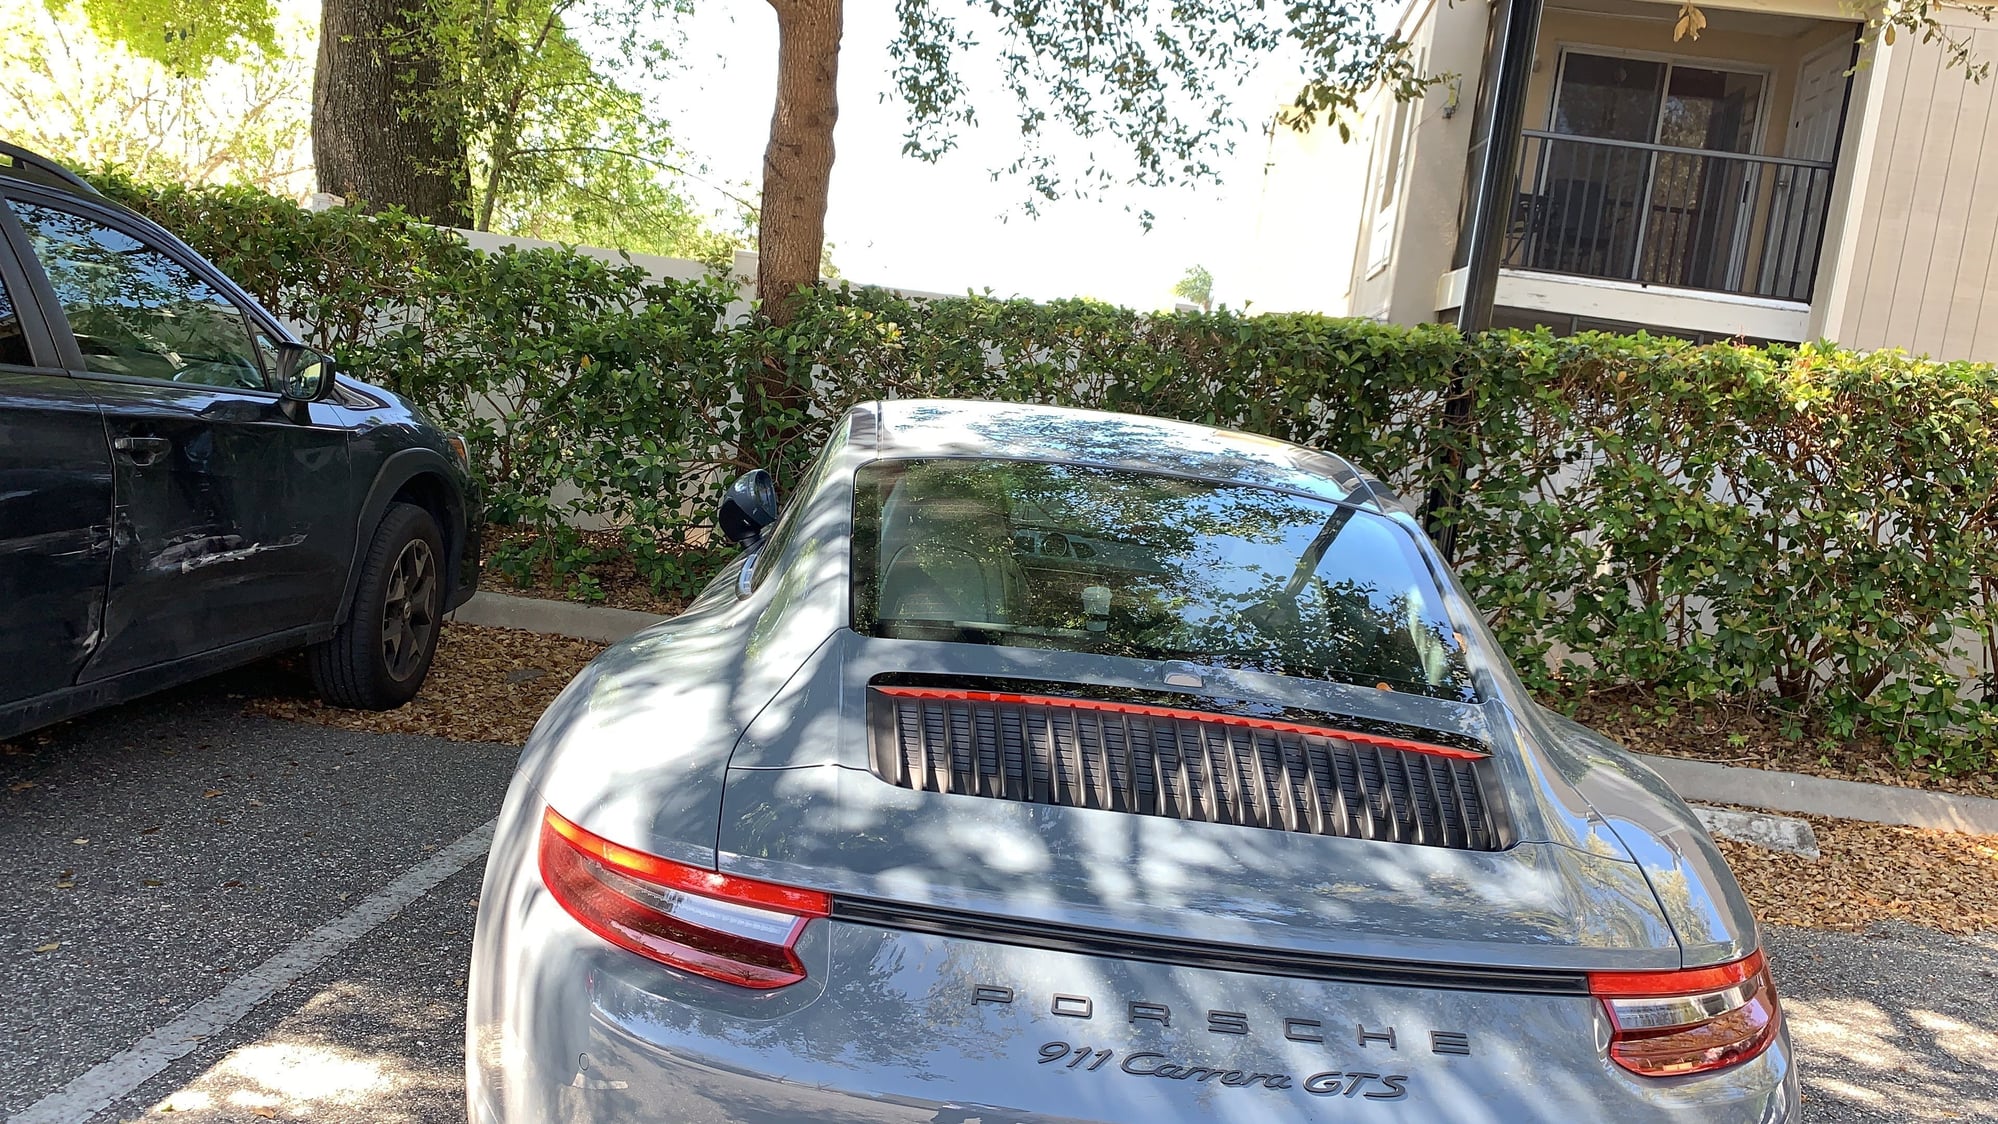 2017 Porsche 911 - 2017 991.2 14.5k miles one owner Graphite Blue Metallic Garaged in Orlando - Used - Orlando, FL 32836, United States